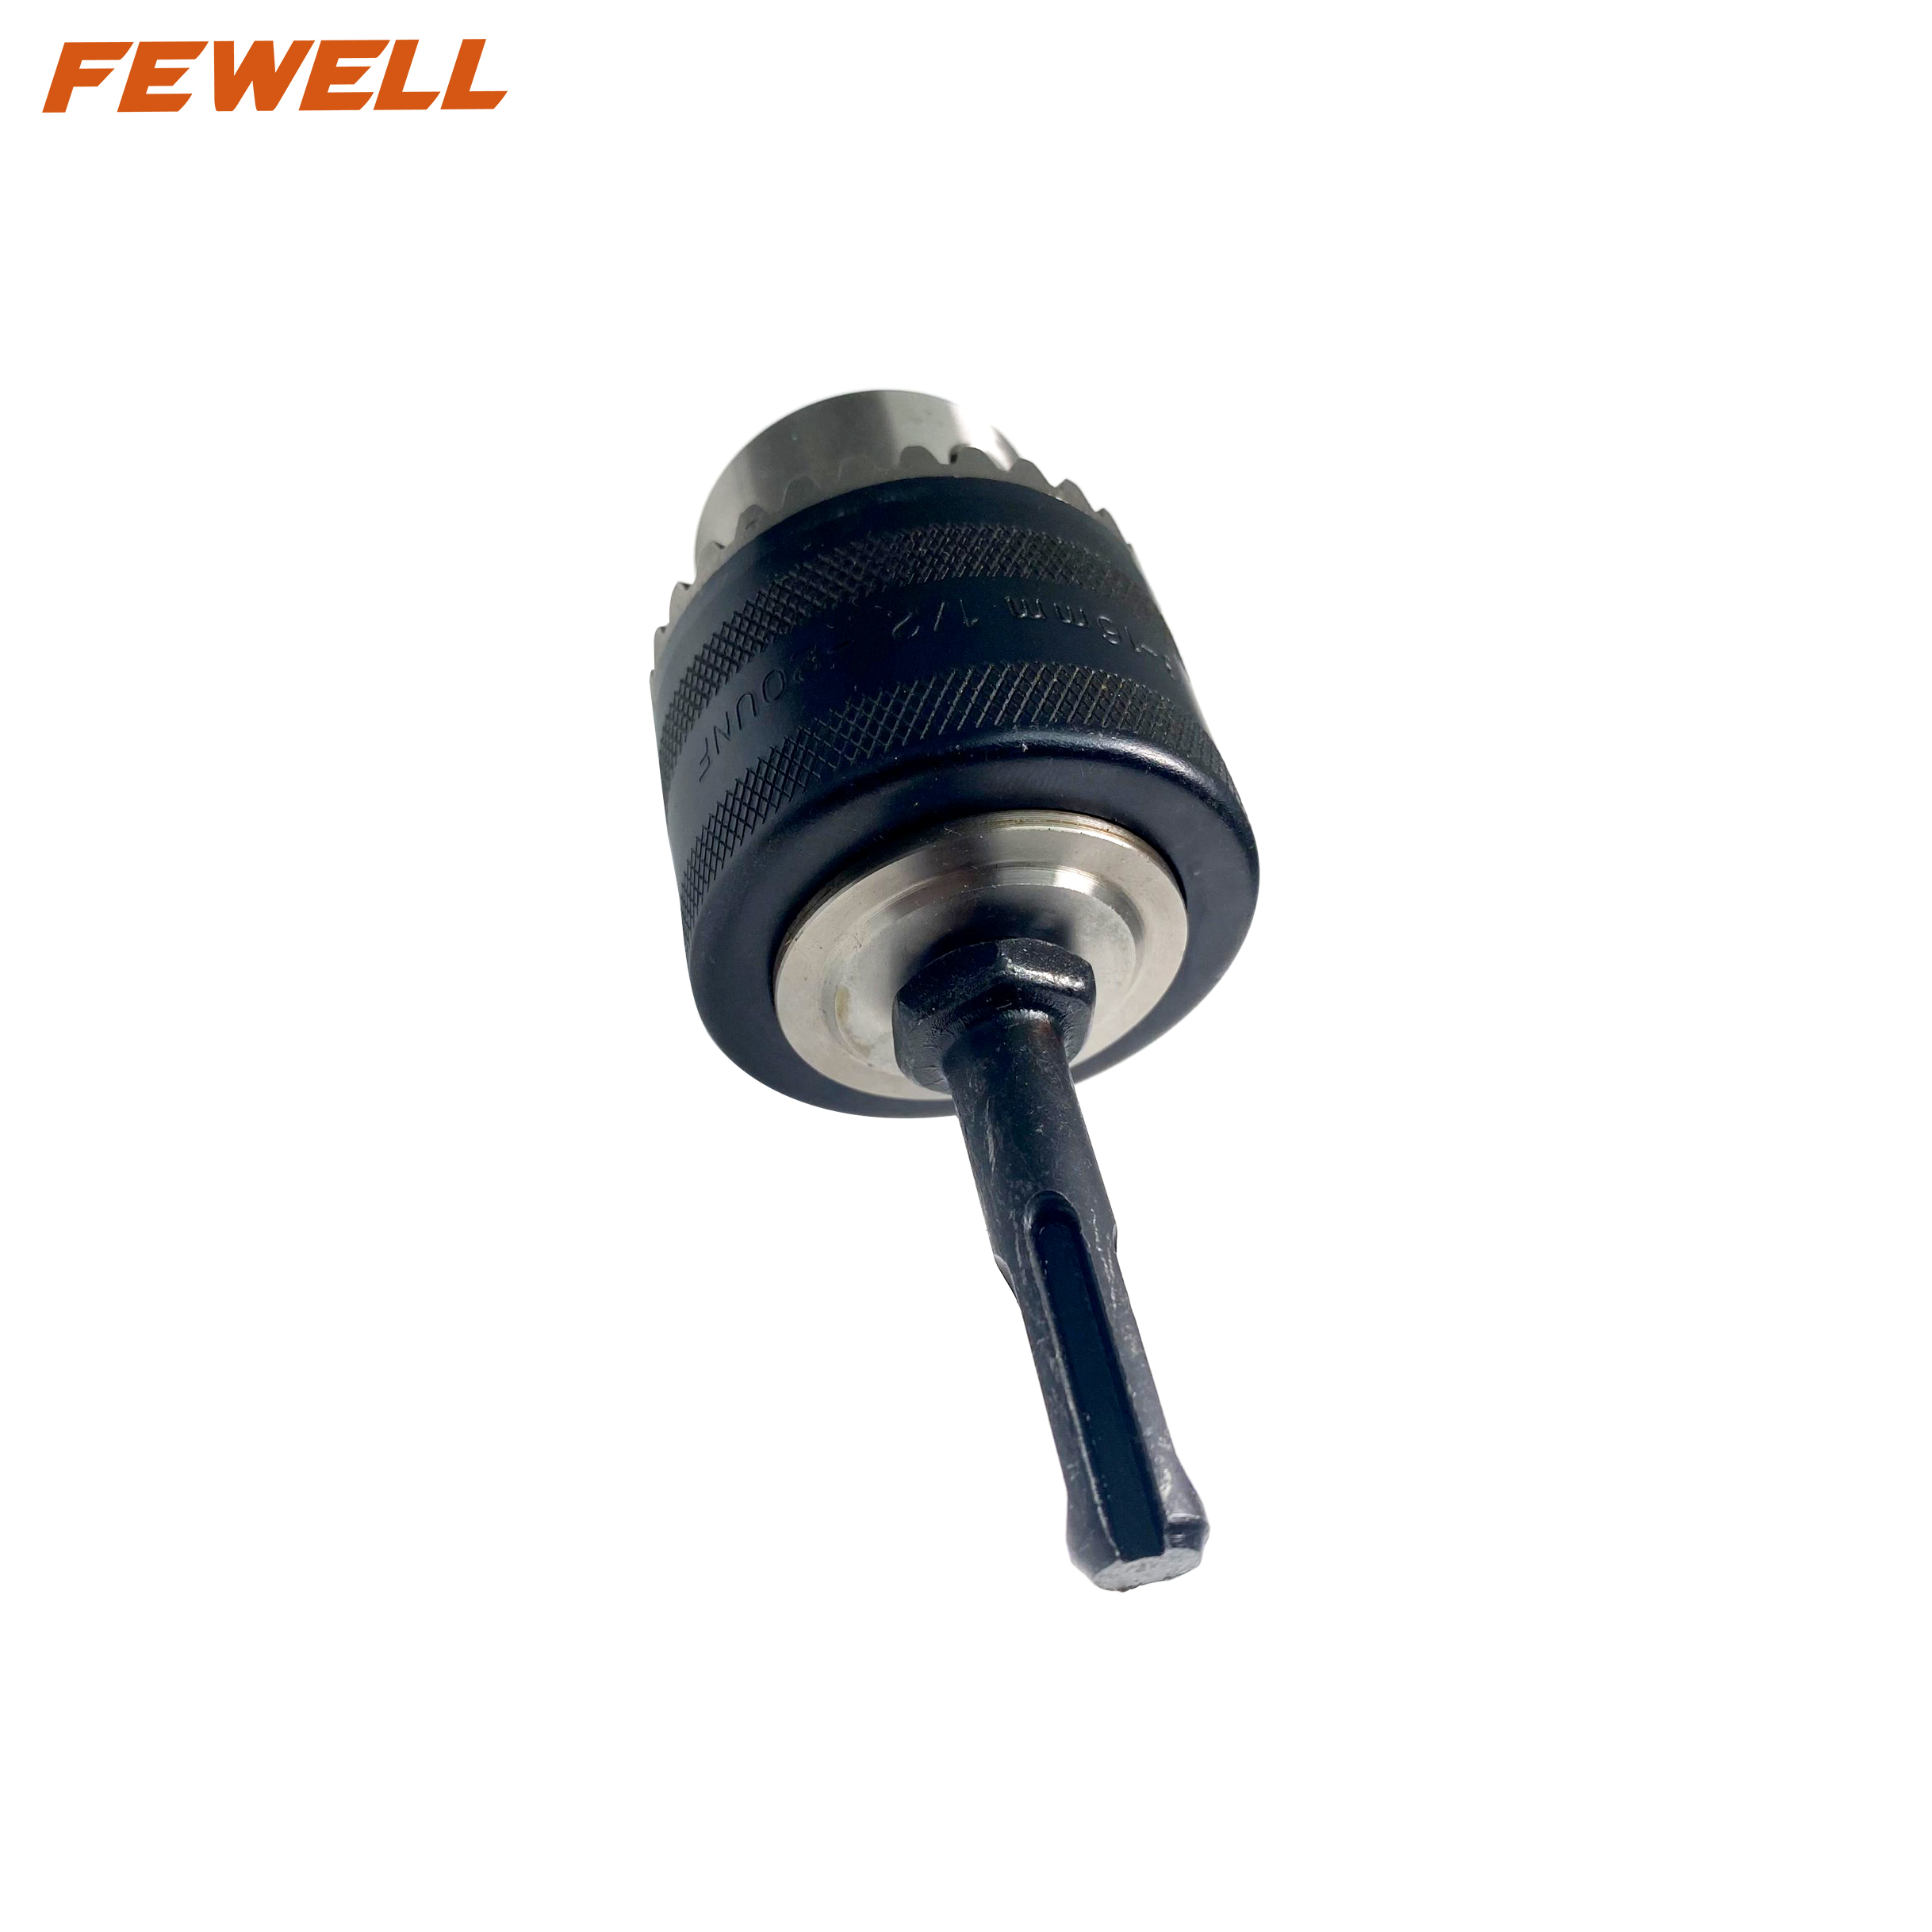 3-16mm 1/2 "-20UNC acero al carbono SDS vástago llave tipo luz portabrocas y adaptador para máquina de perforación